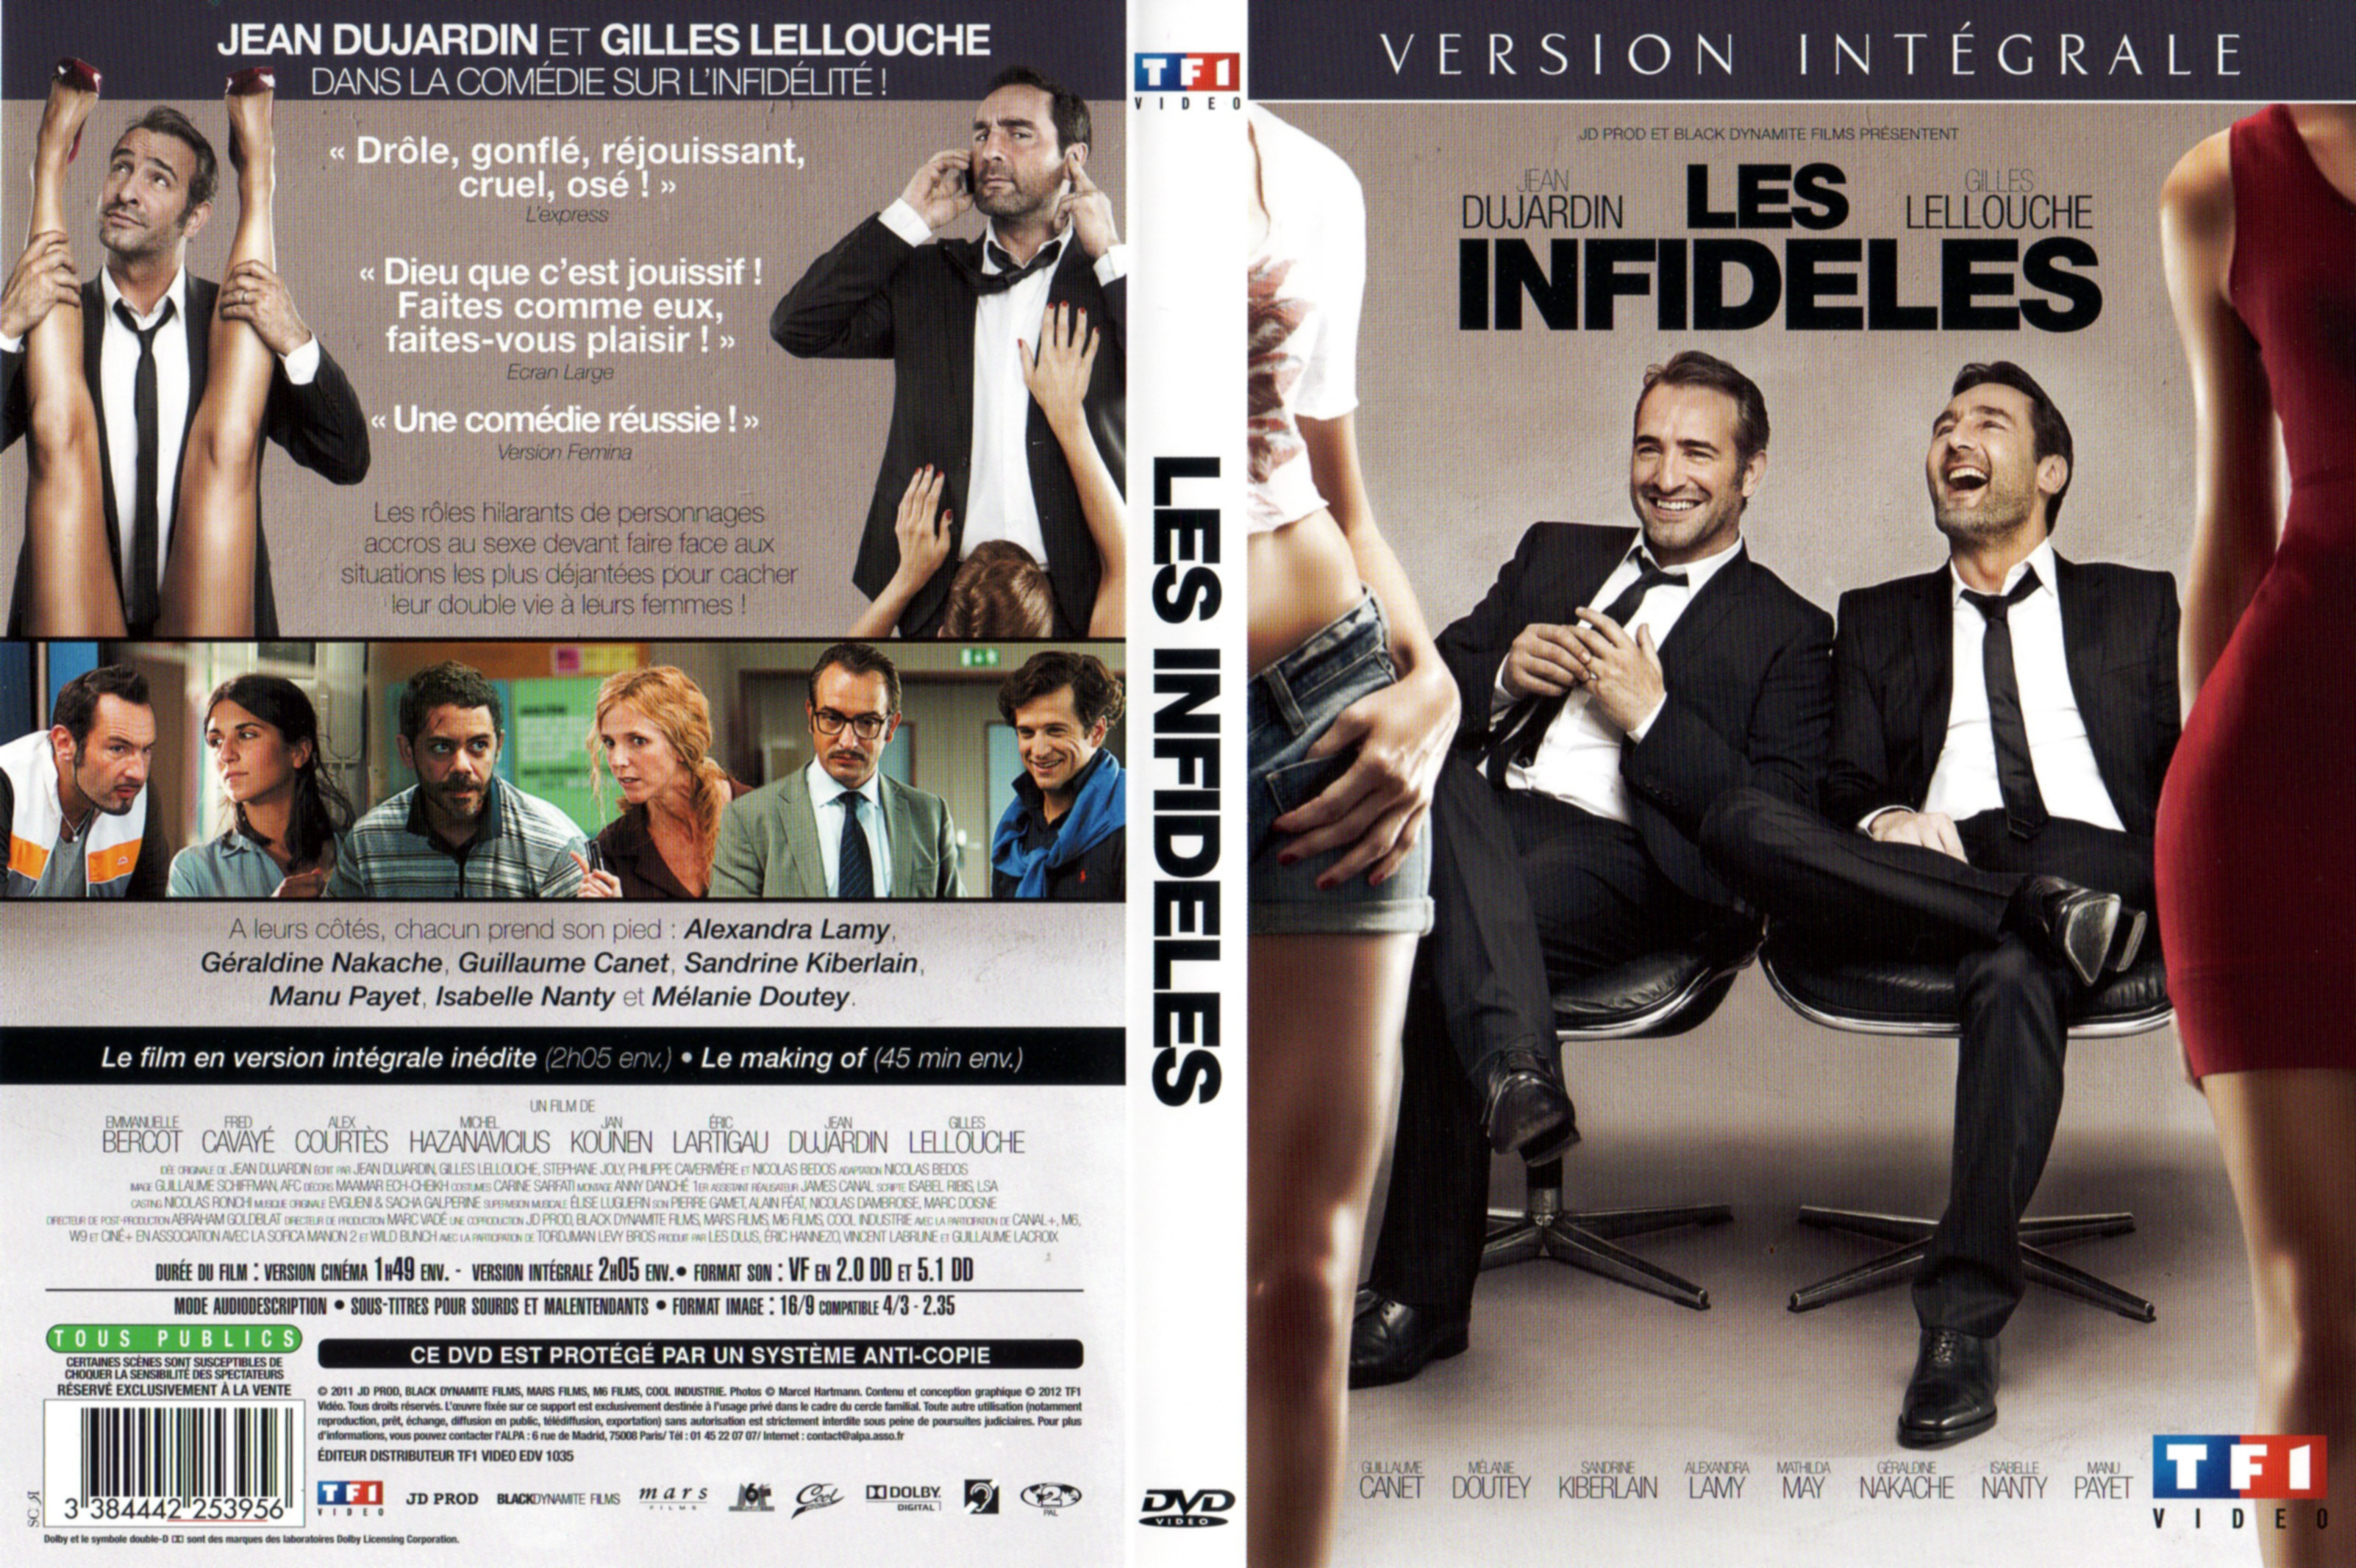 Jaquette DVD Les infidles